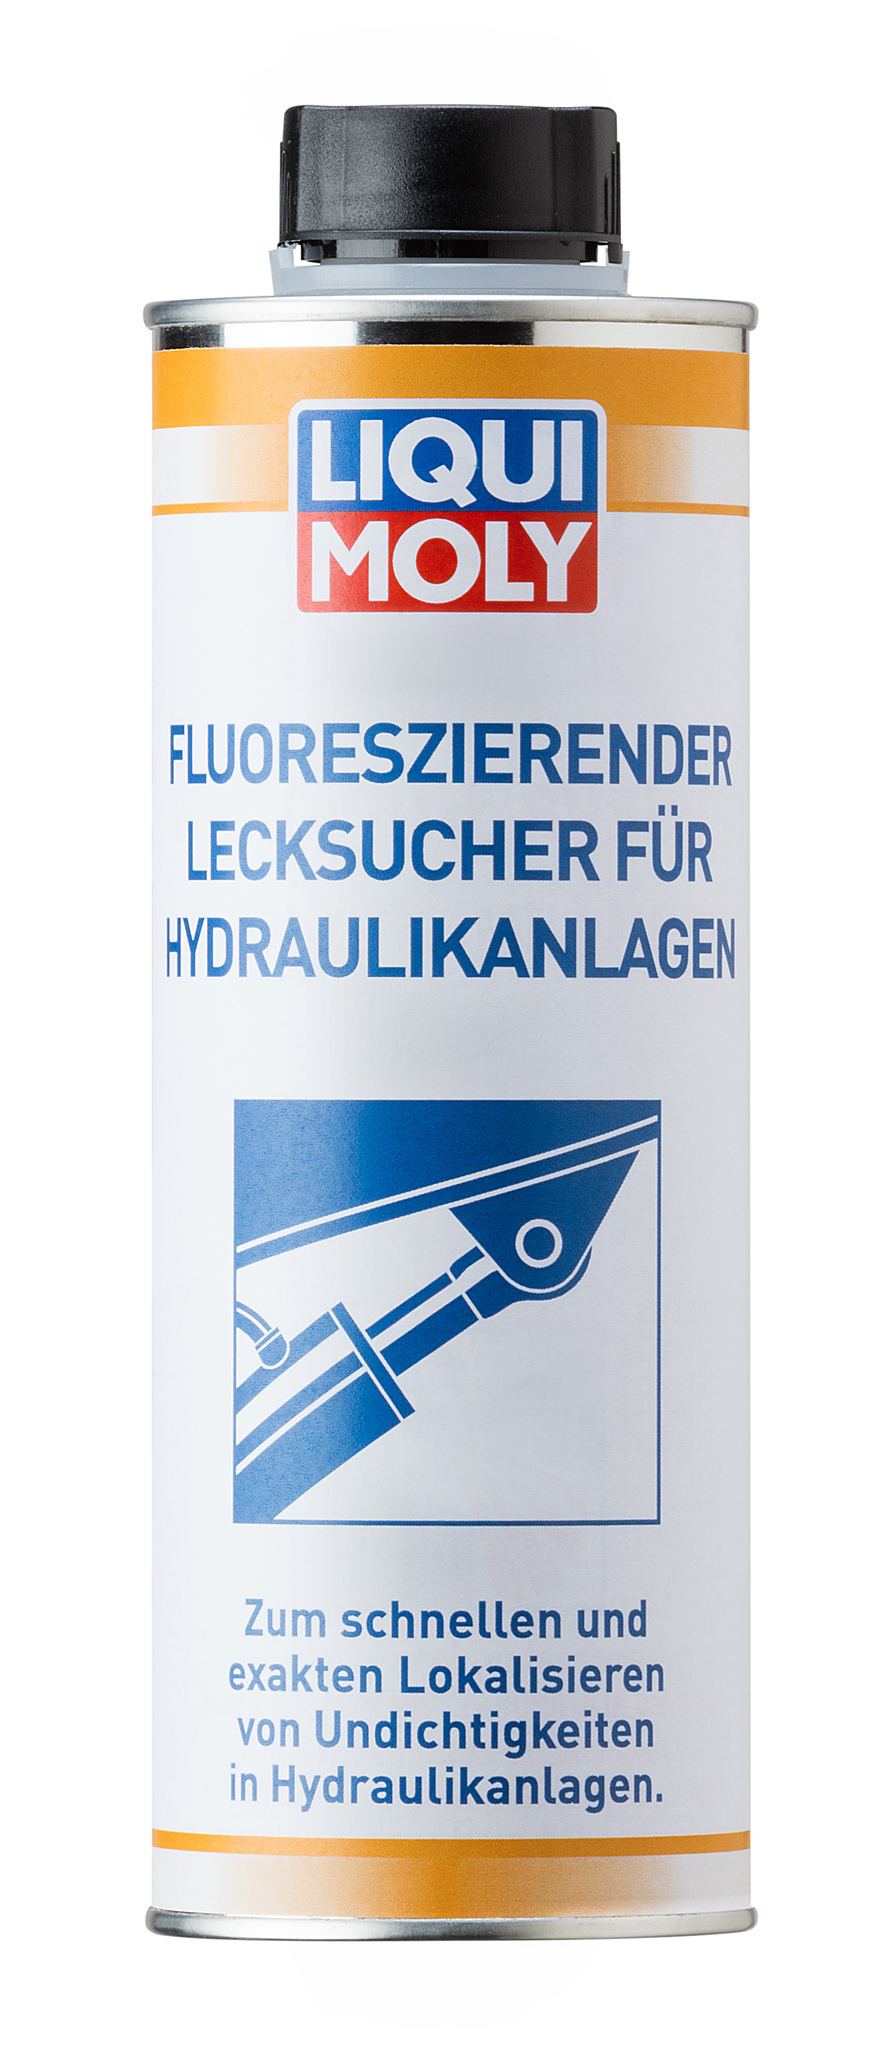 Liqui Moly Fluoreszierender Lecksucher fur Hydraulikanlagen Флуоресцентный детектор утечки для гидравлических систем